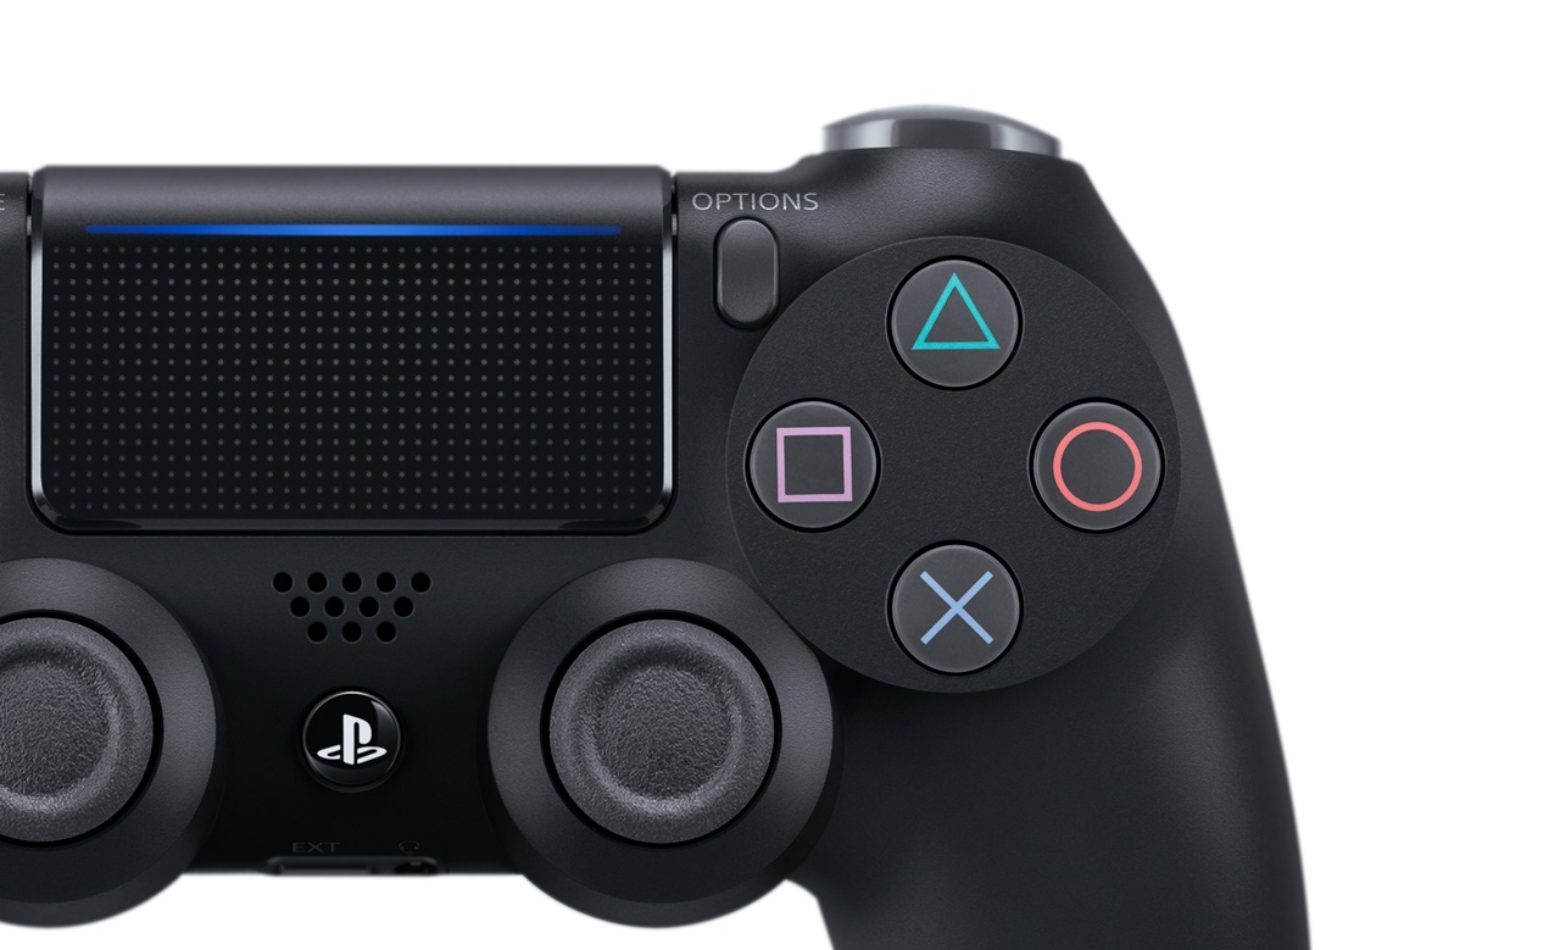 O que há de diferente no “novo” controle do PS4?